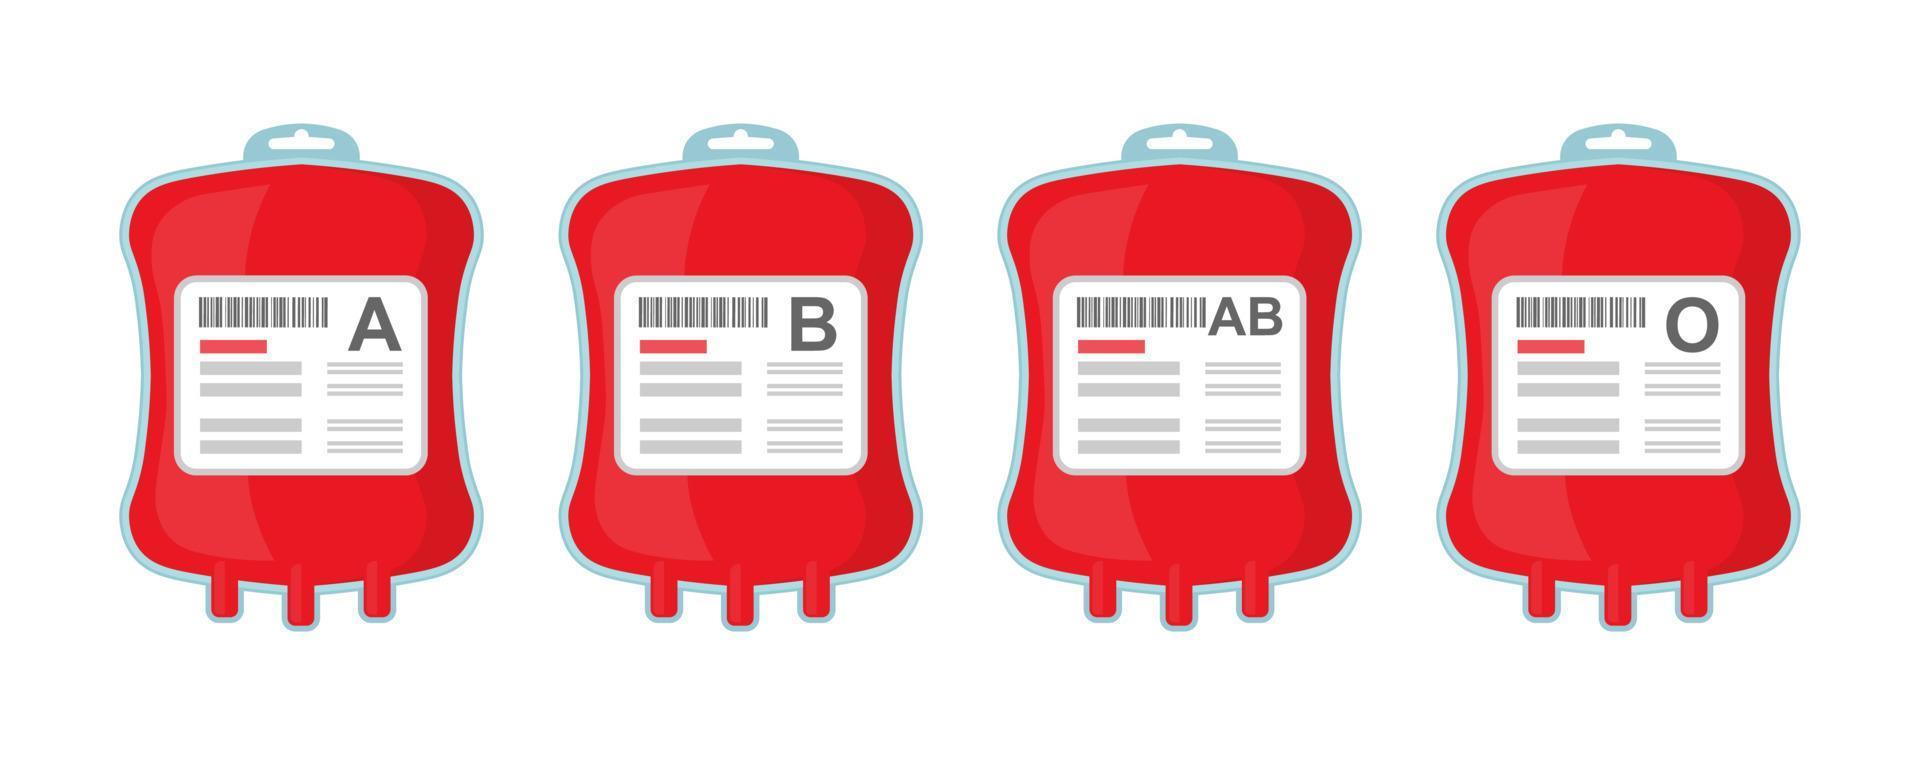 bolsas com diferentes tipos sanguíneos ab ab o. conceito de doação de sangue para ajudar as vítimas. vetor